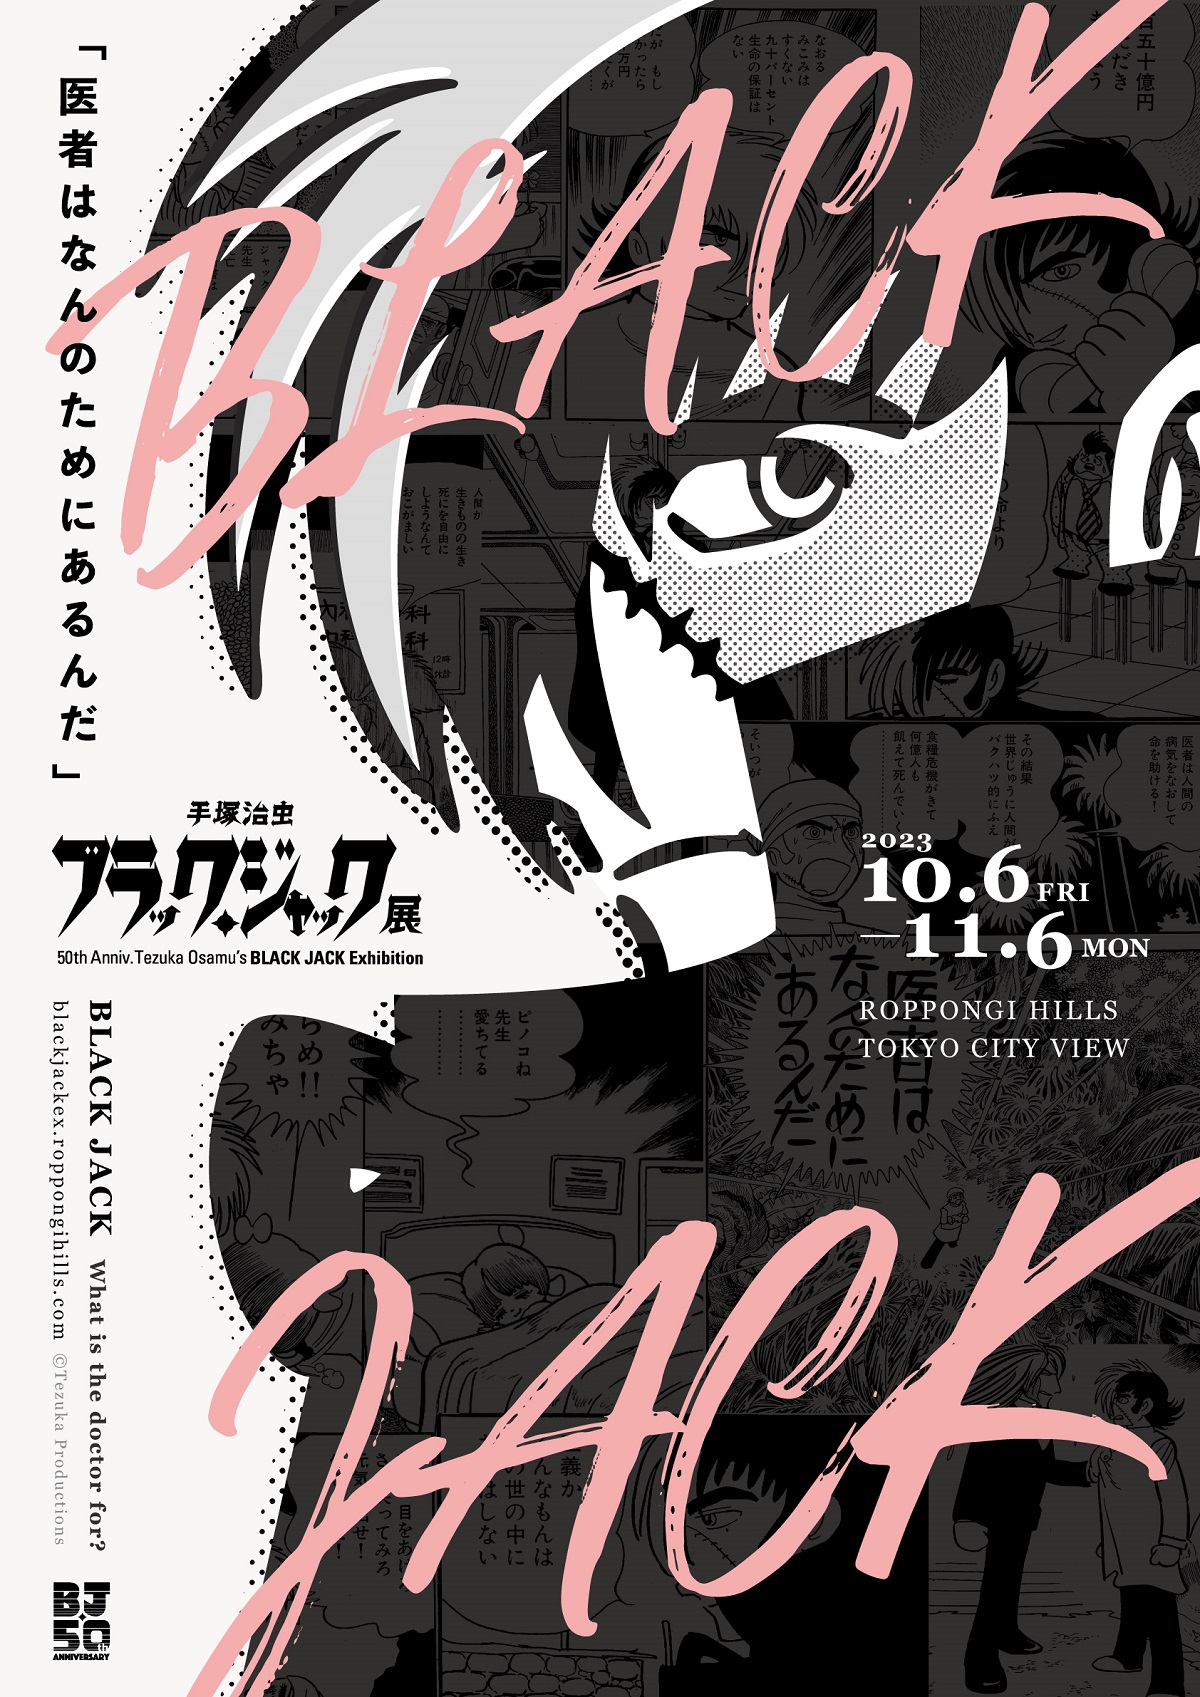 連載50周年記念「手塚治虫 ブラック・ジャック展」10月より開催—名作『ブラック・ジャック』のすべてが東京シティビューに